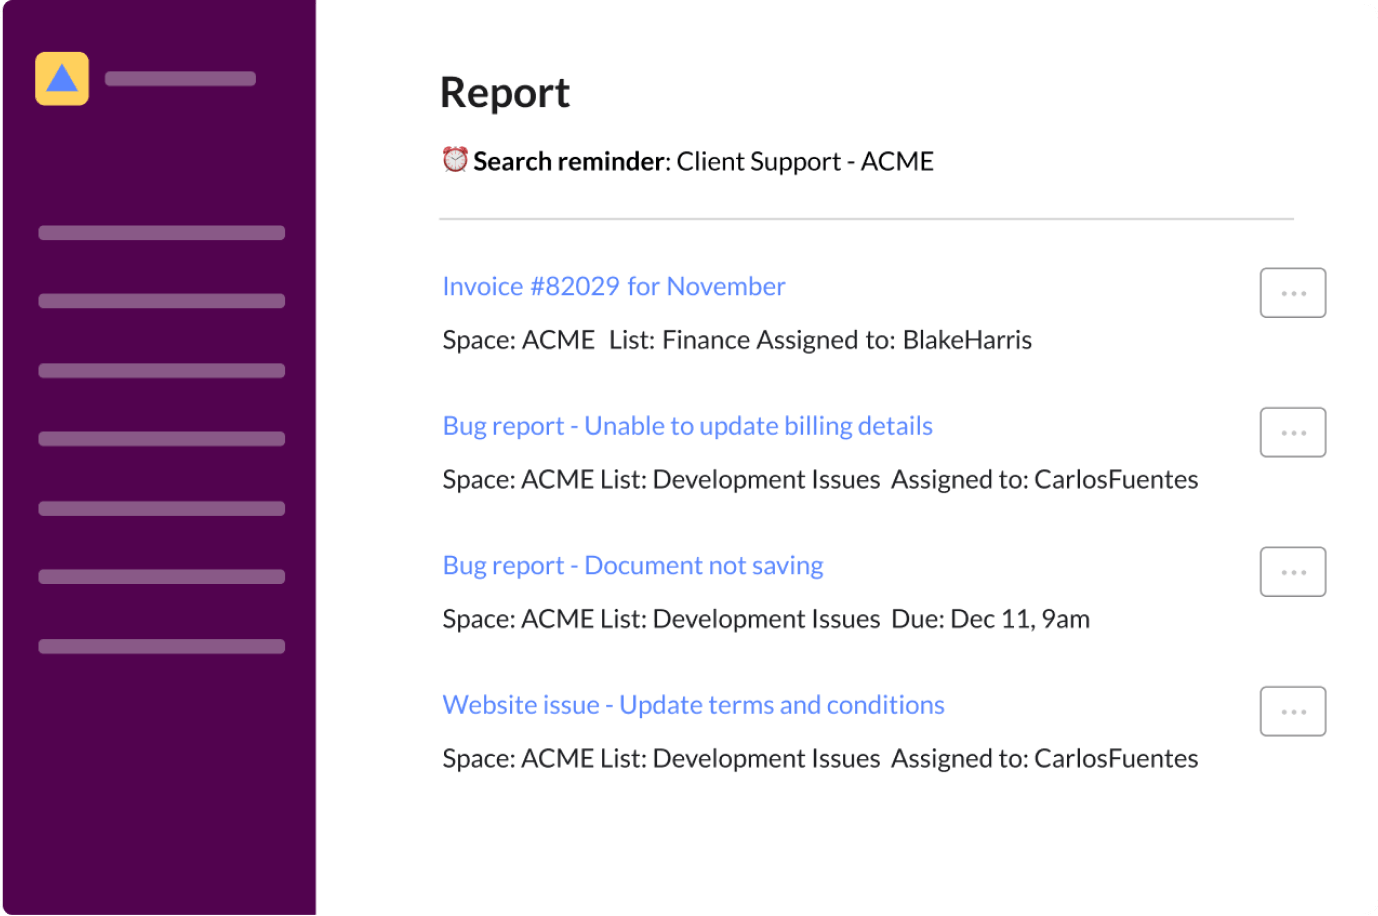 Receive custom reports in Slack